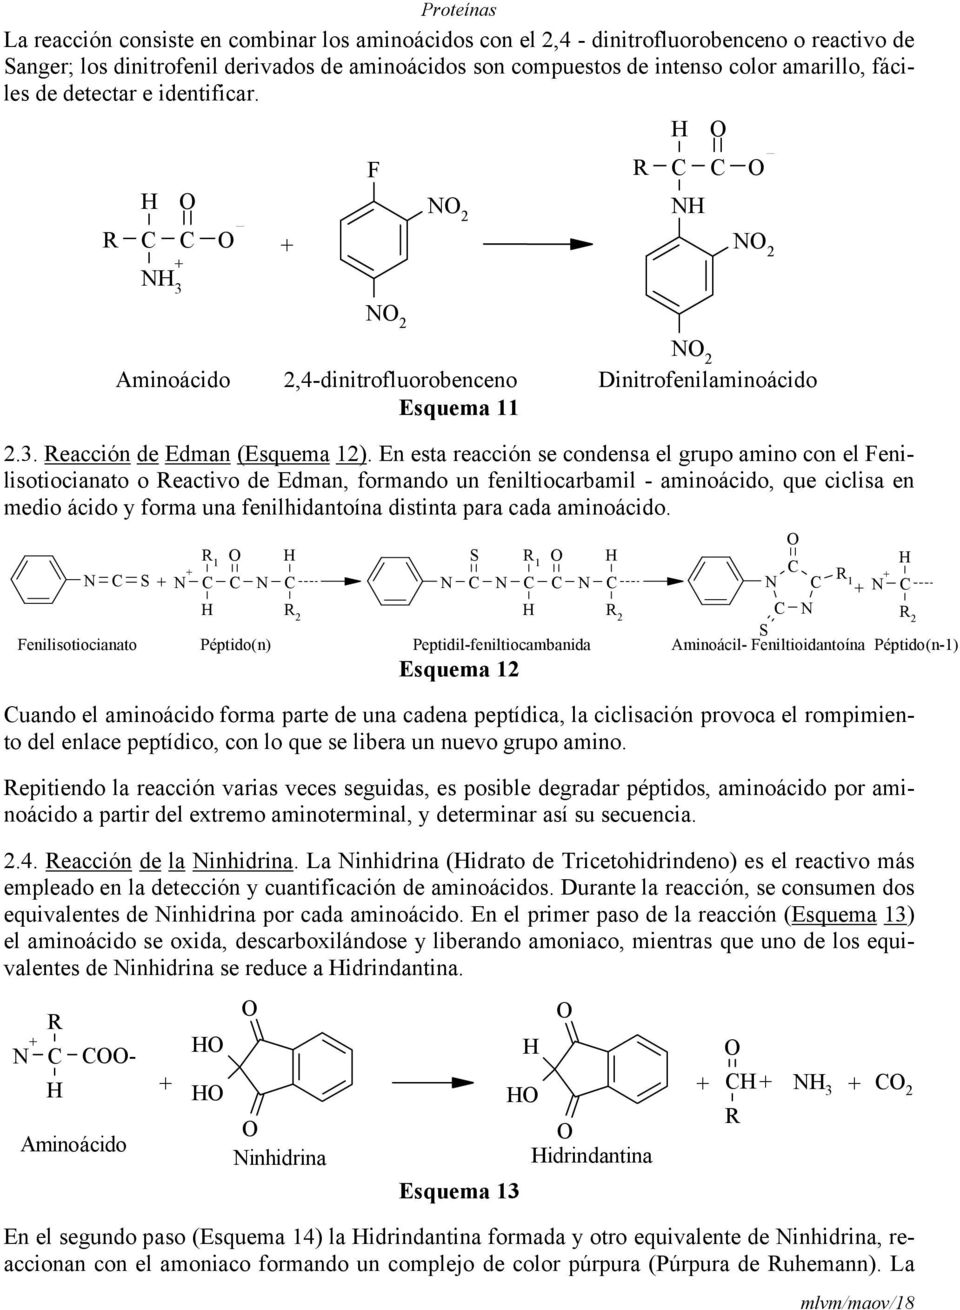 En esta reacción se condensa el grupo amino con el Fenilisotiocianato o Reactivo de Edman, formando un feniltiocarbamil - aminoácido, que ciclisa en medio ácido y forma una fenilhidantoína distinta